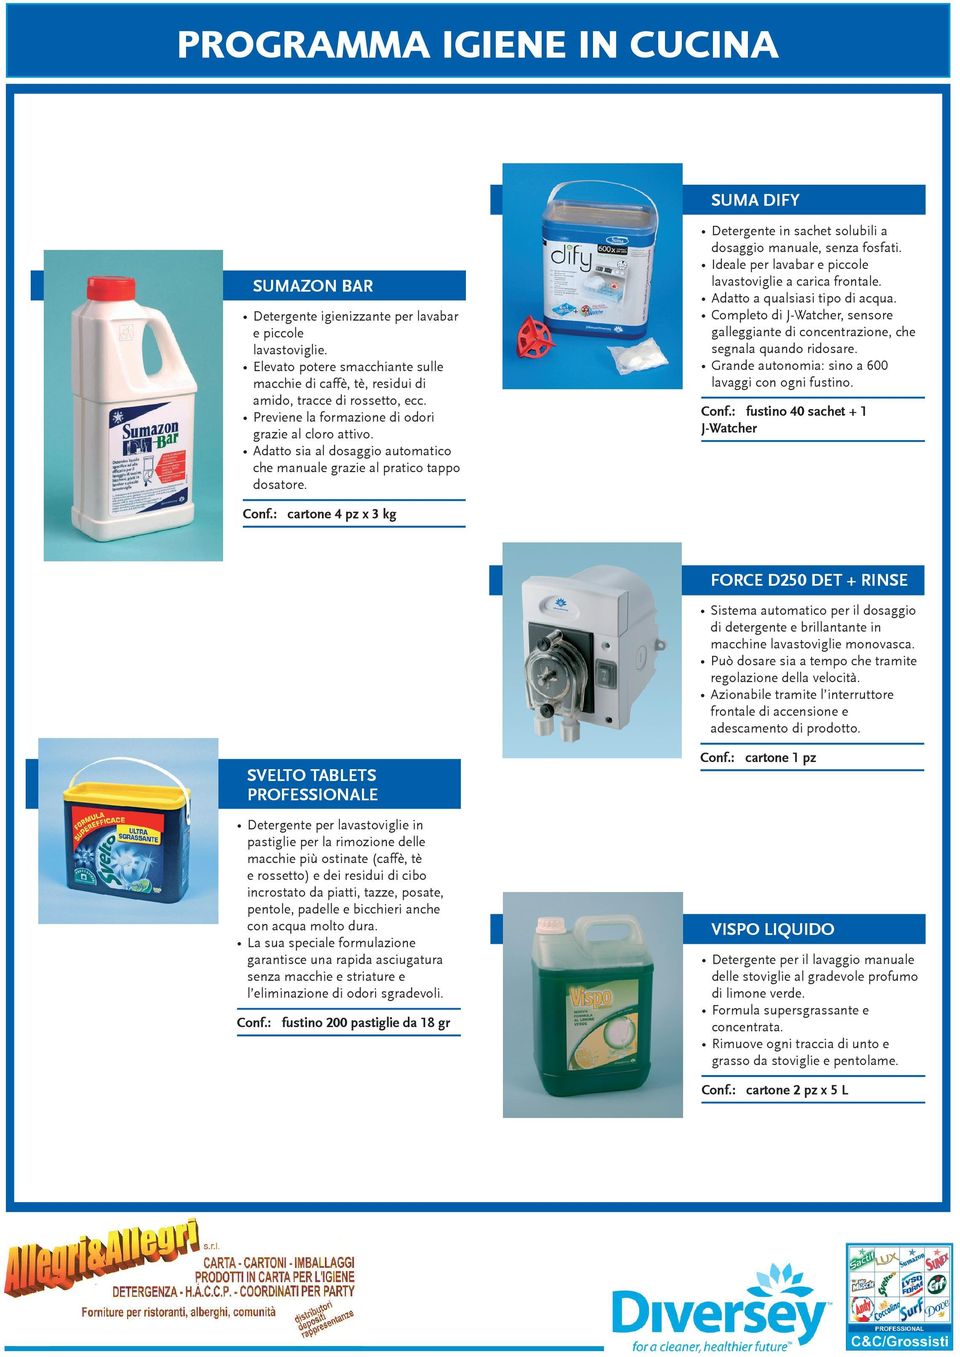 Adatto sia al dosaggio automatico che manuale grazie al pratico tappo dosatore. Detergente in sachet solubili a dosaggio manuale, senza fosfati.